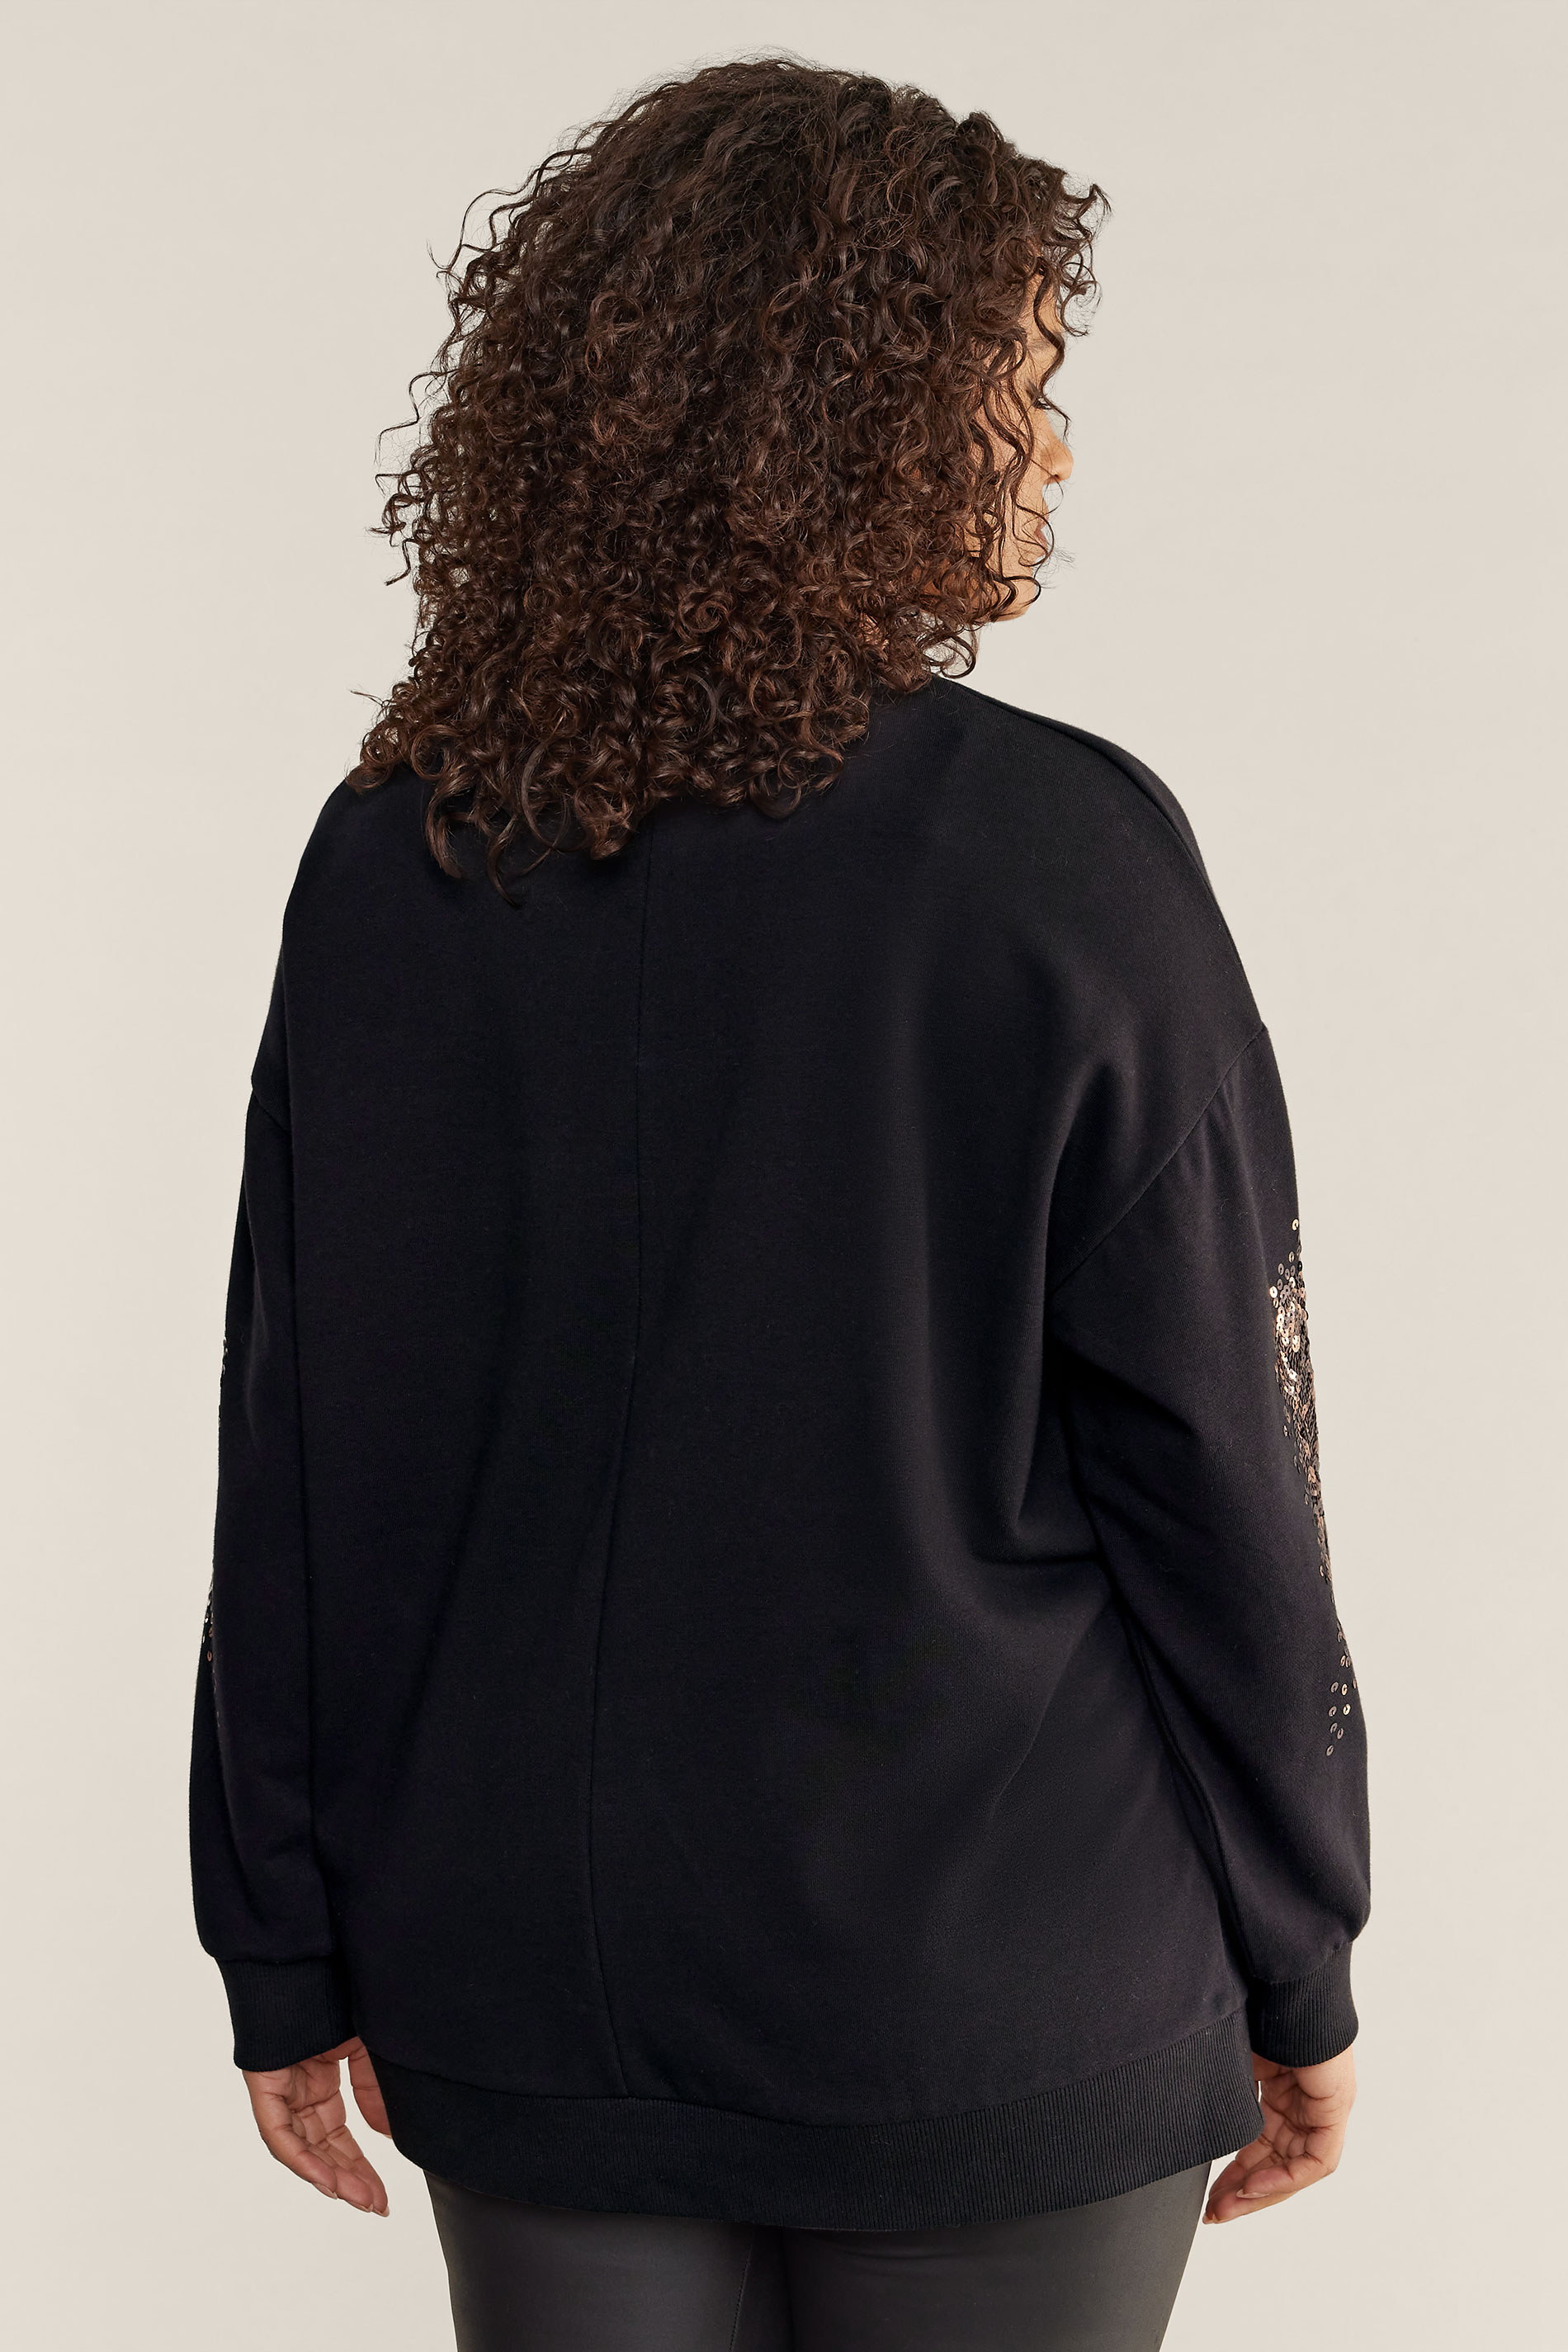 EVANS Plus Size Black & Bronze Sequin Sweatshirt | Evans 3